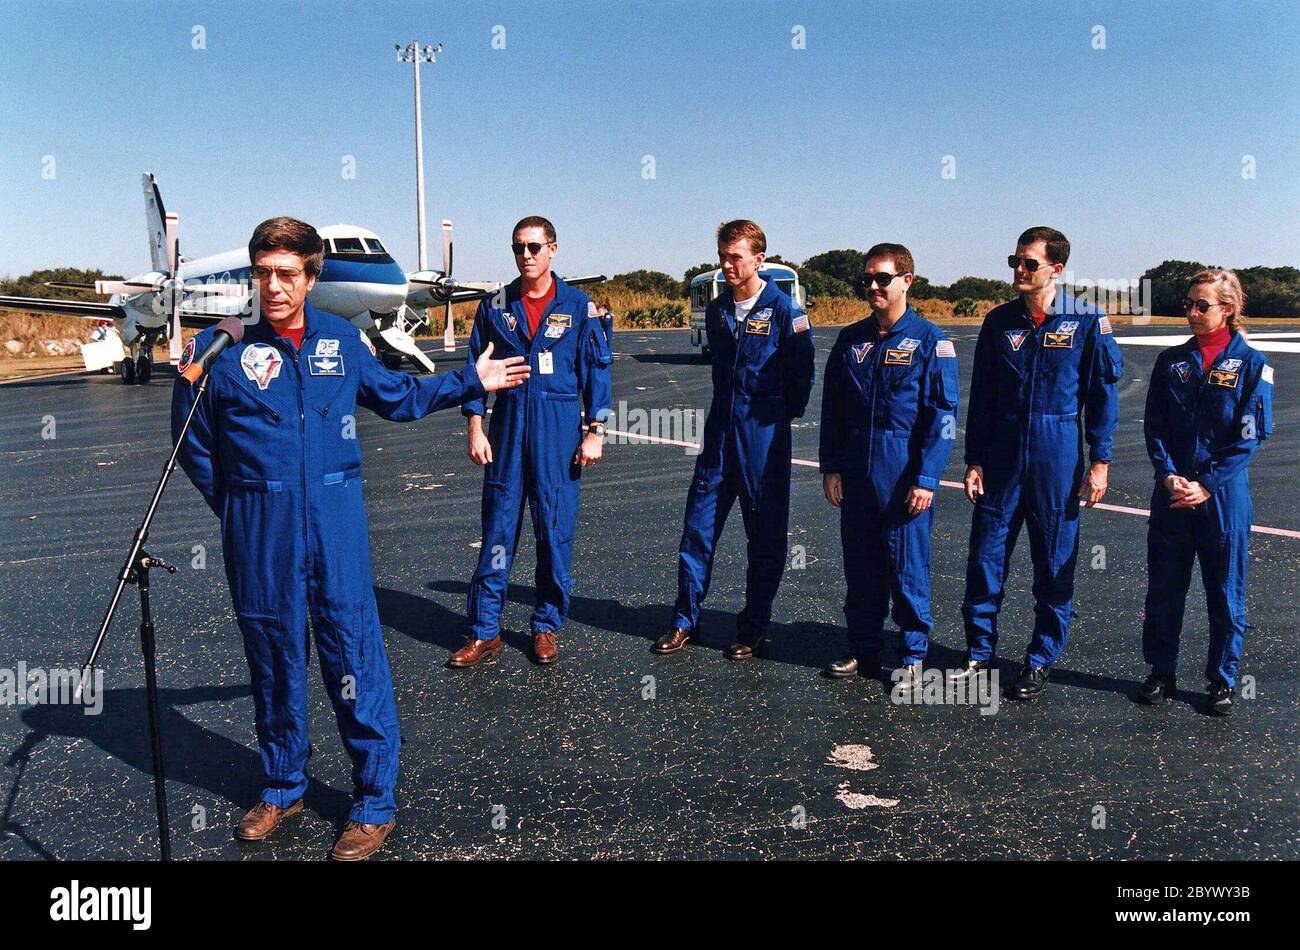 Ritorno astronauta della NASA ed ex membro dell'equipaggio Mir 22 John E. Blaha (a sinistra), gesti verso i suoi compagni membri dell'equipaggio STS-81 durante una conferenza stampa prima della loro partenza per Johnson Space Center dal gennaio 23 dalla Skid Strip presso la stazione aerea di Cape Canaveral. L'equipaggio è arrivato al KSC a bordo dello Space Shuttle Atlantis il 22 gennaio per concludere la quinta missione di attracco dello Shuttle-Mir e tornare a Blaha sulla Terra dopo quattro mesi nello spazio. Dietro Blaha da sinistra ci sono il comandante della missione Michael A. Baker; il pilota Brent W. Jett, e gli specialisti della missione John M. Grunsfeld, Peter J. K. 'Jeff' Wisoff e Marsha S. Foto Stock